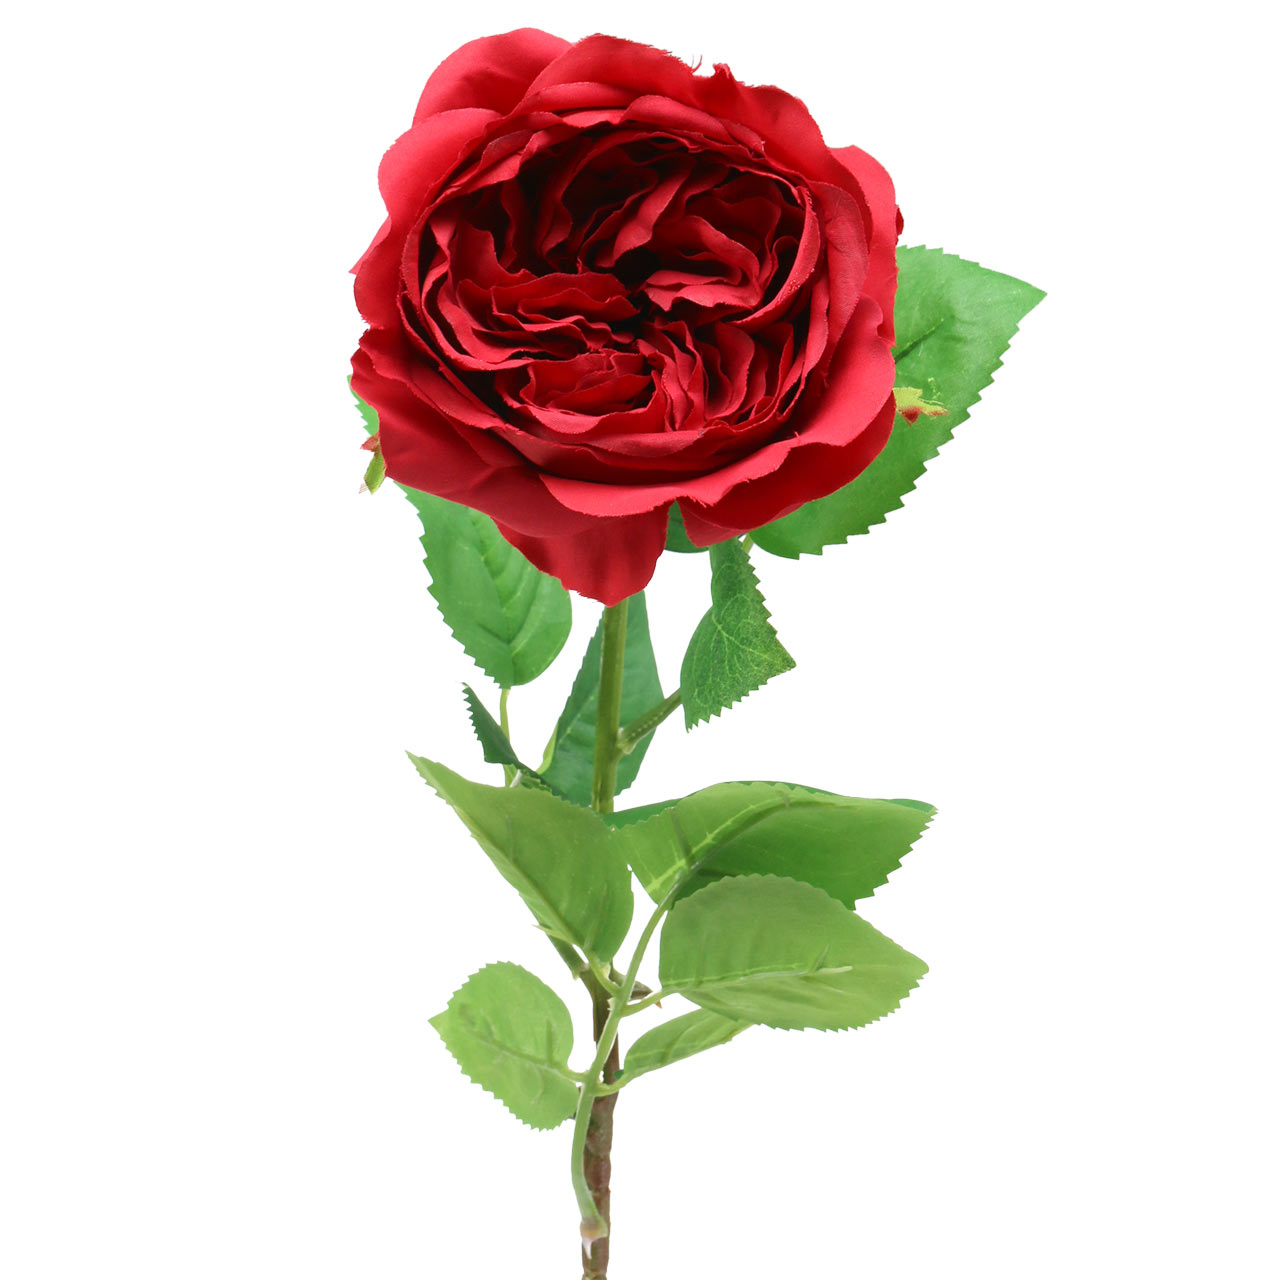 Floristik21.de Rose Kunstblume Rot 72cm-66629